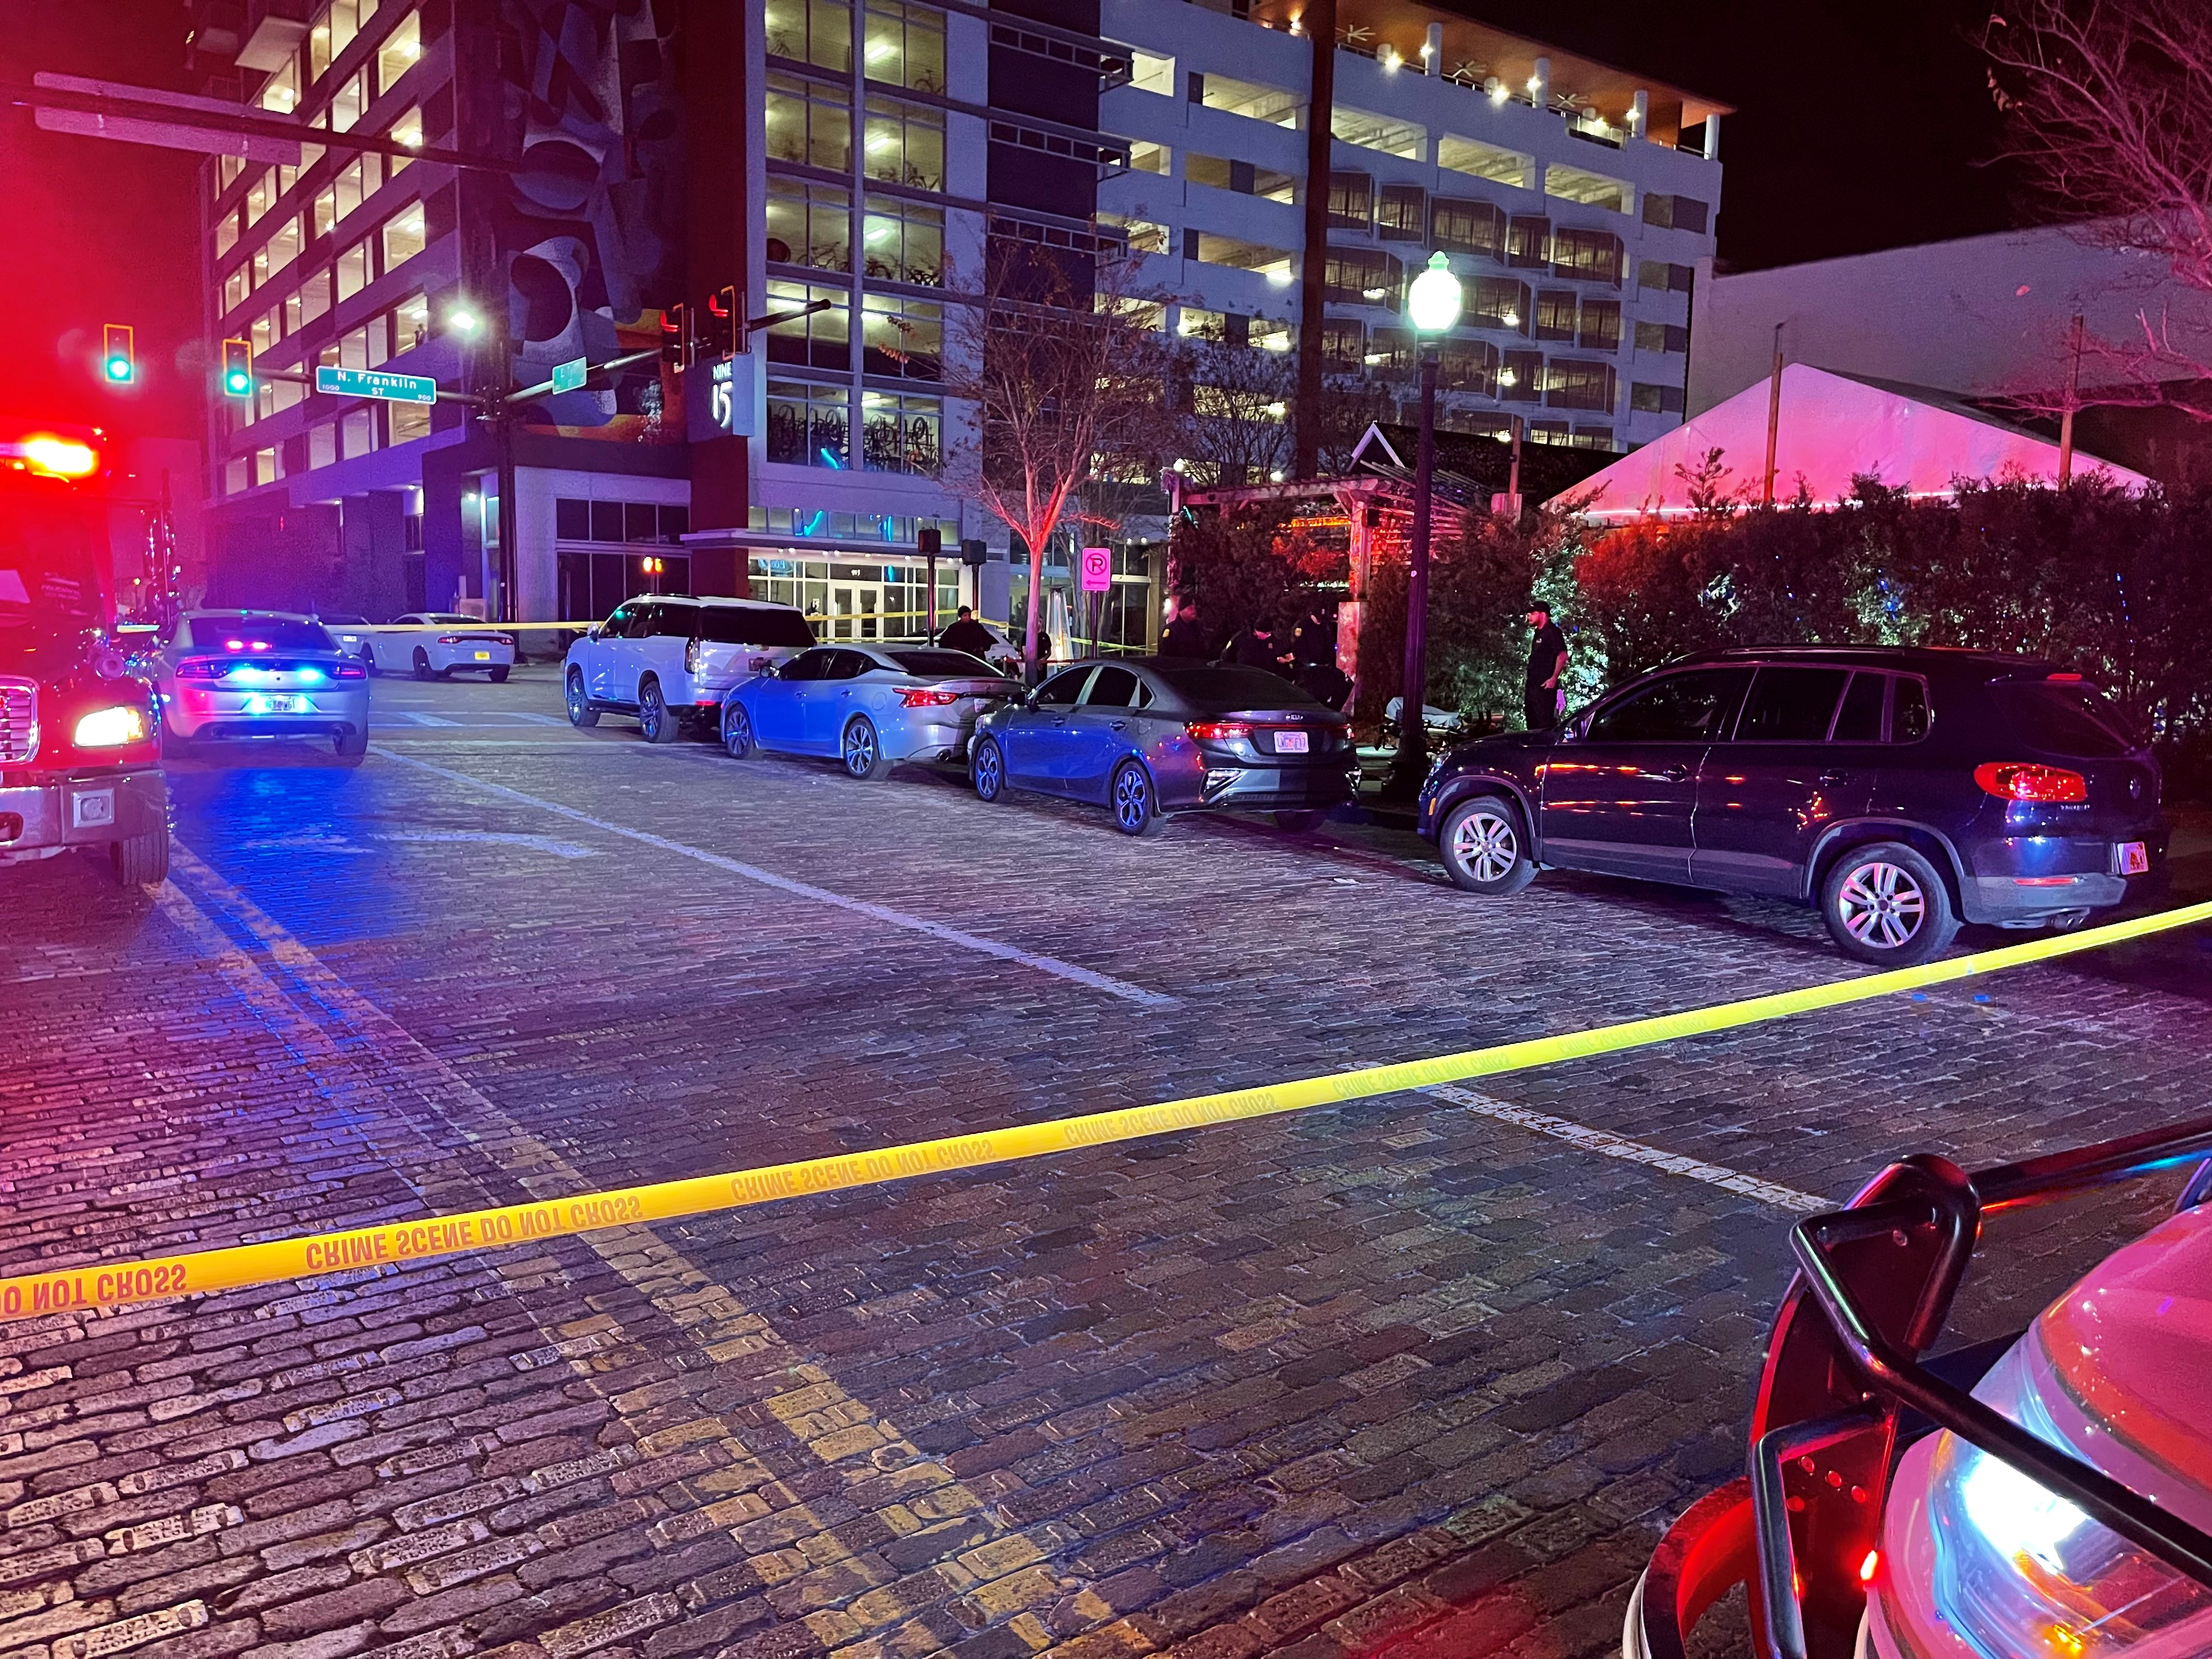 Shooting at Eden Nightclub Leaves Two Injured 